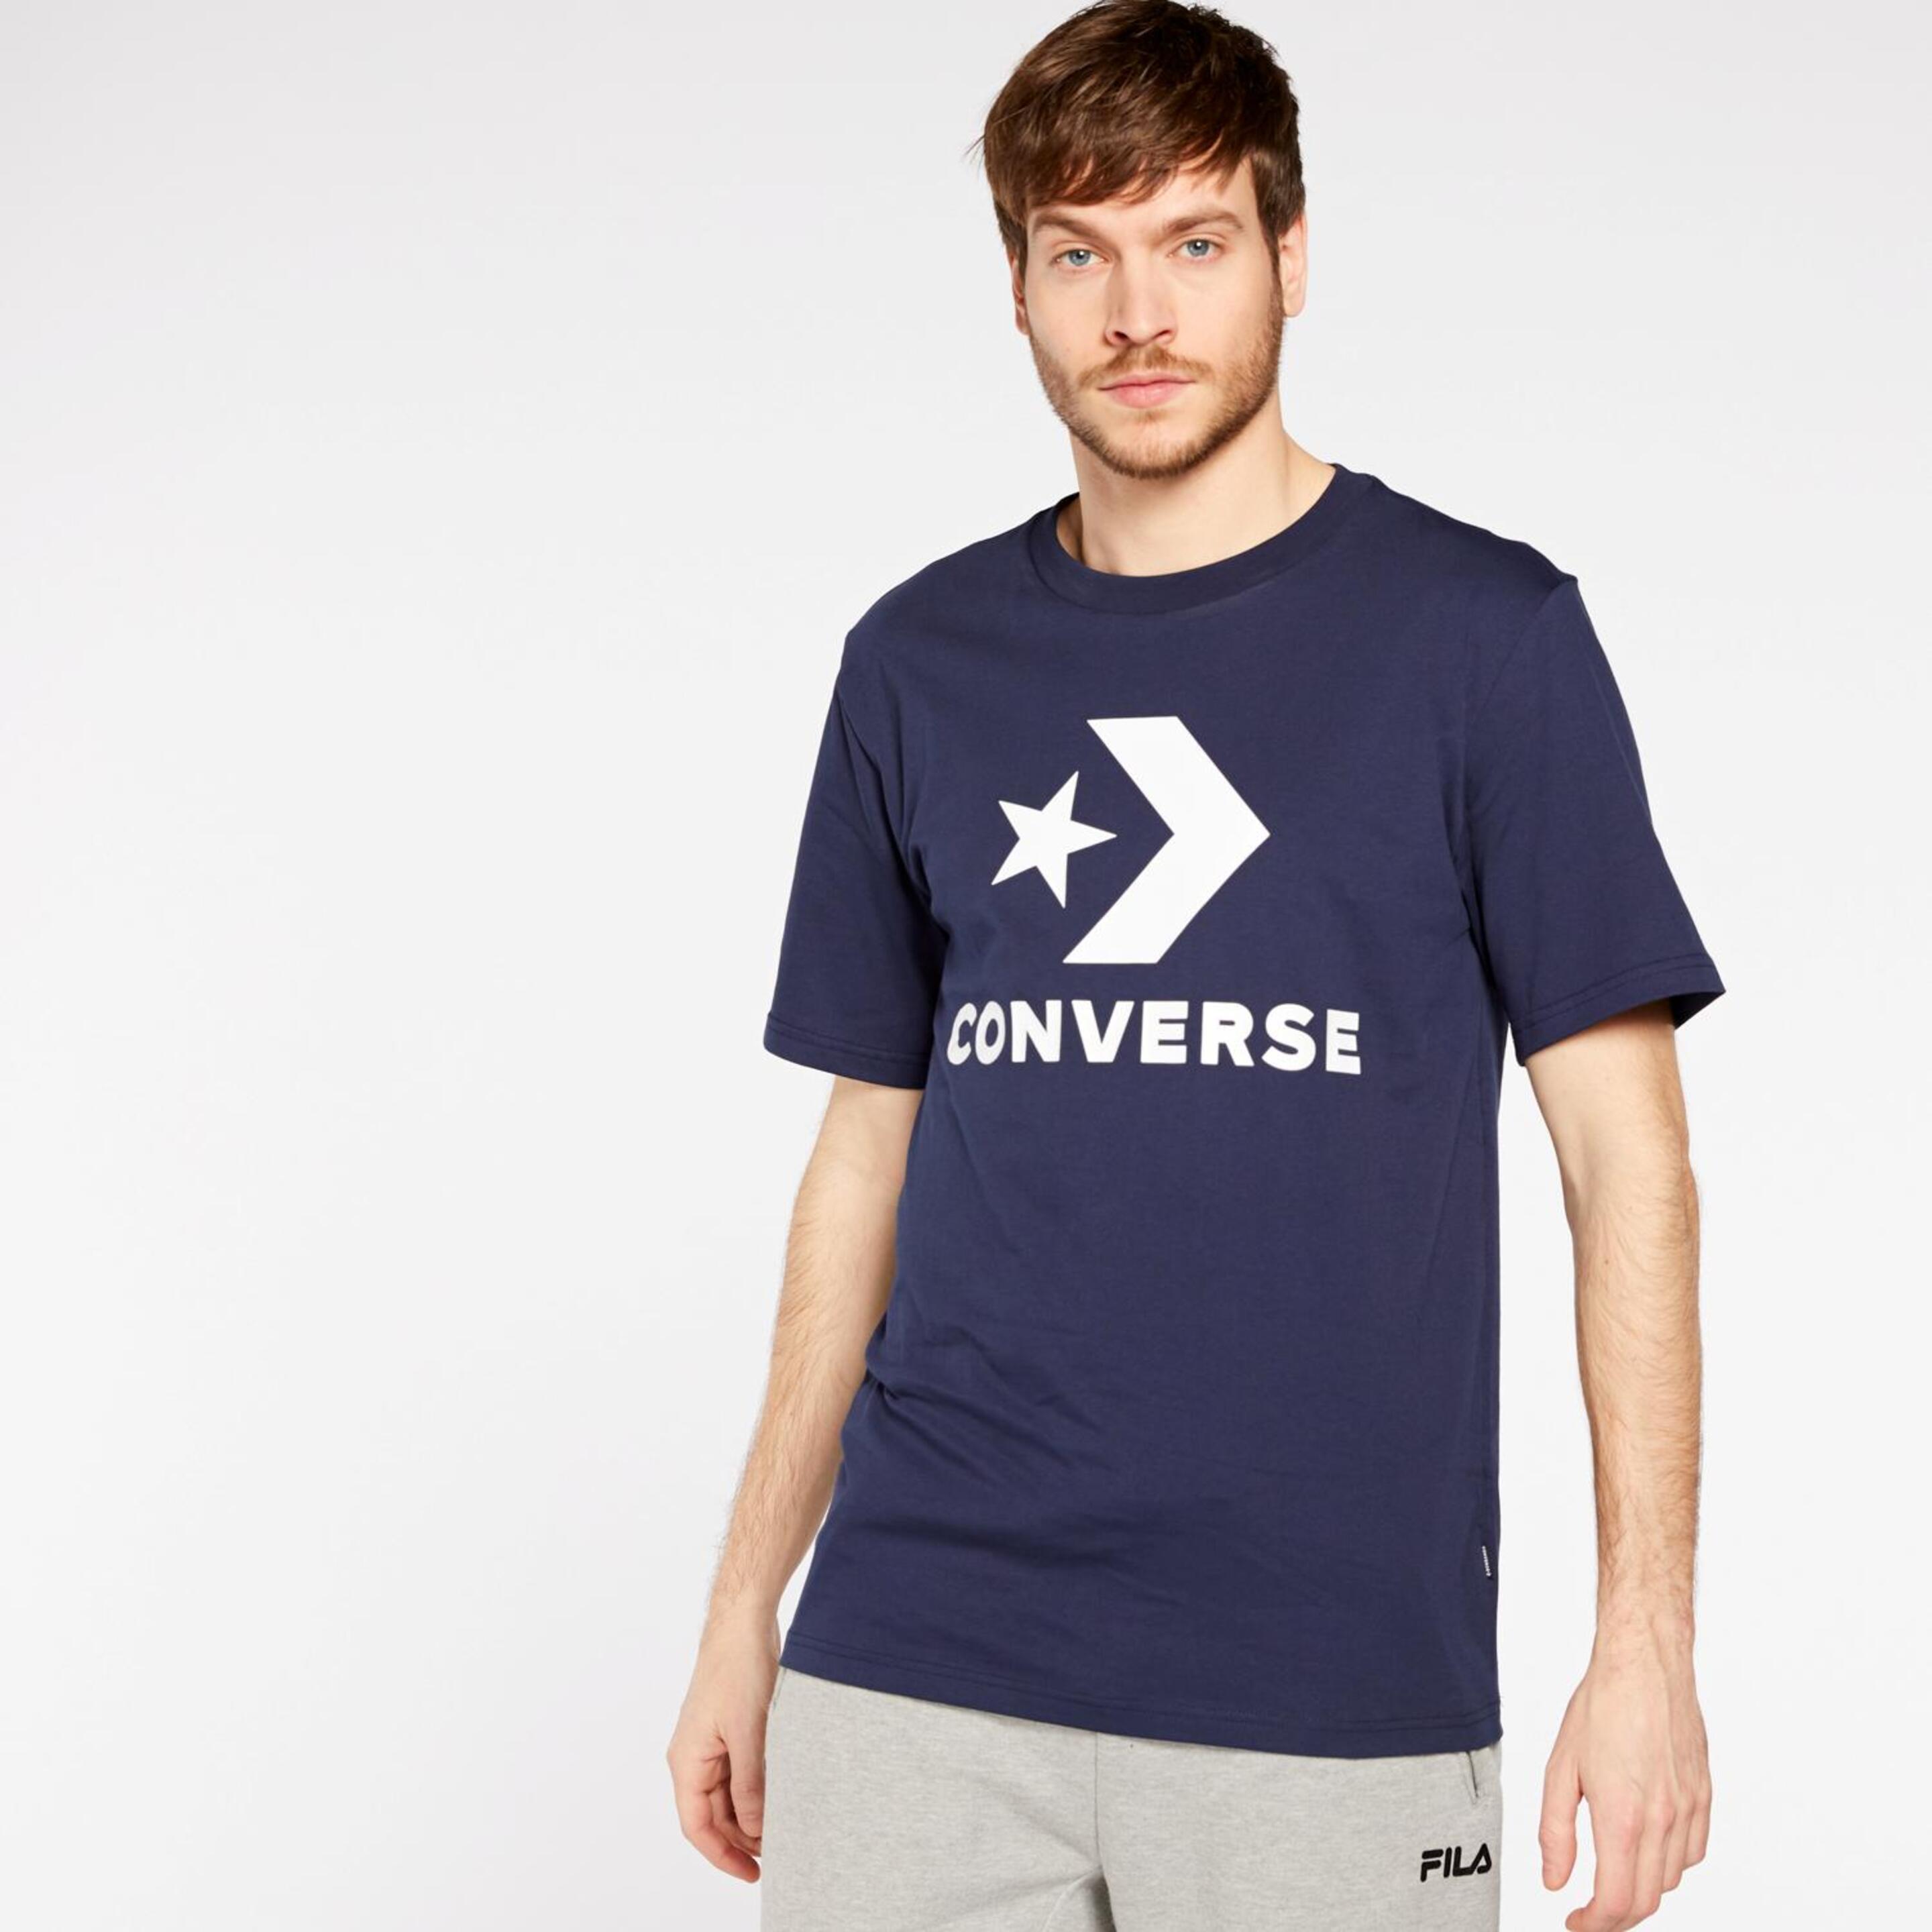 T-shirt Converse Star Chevron